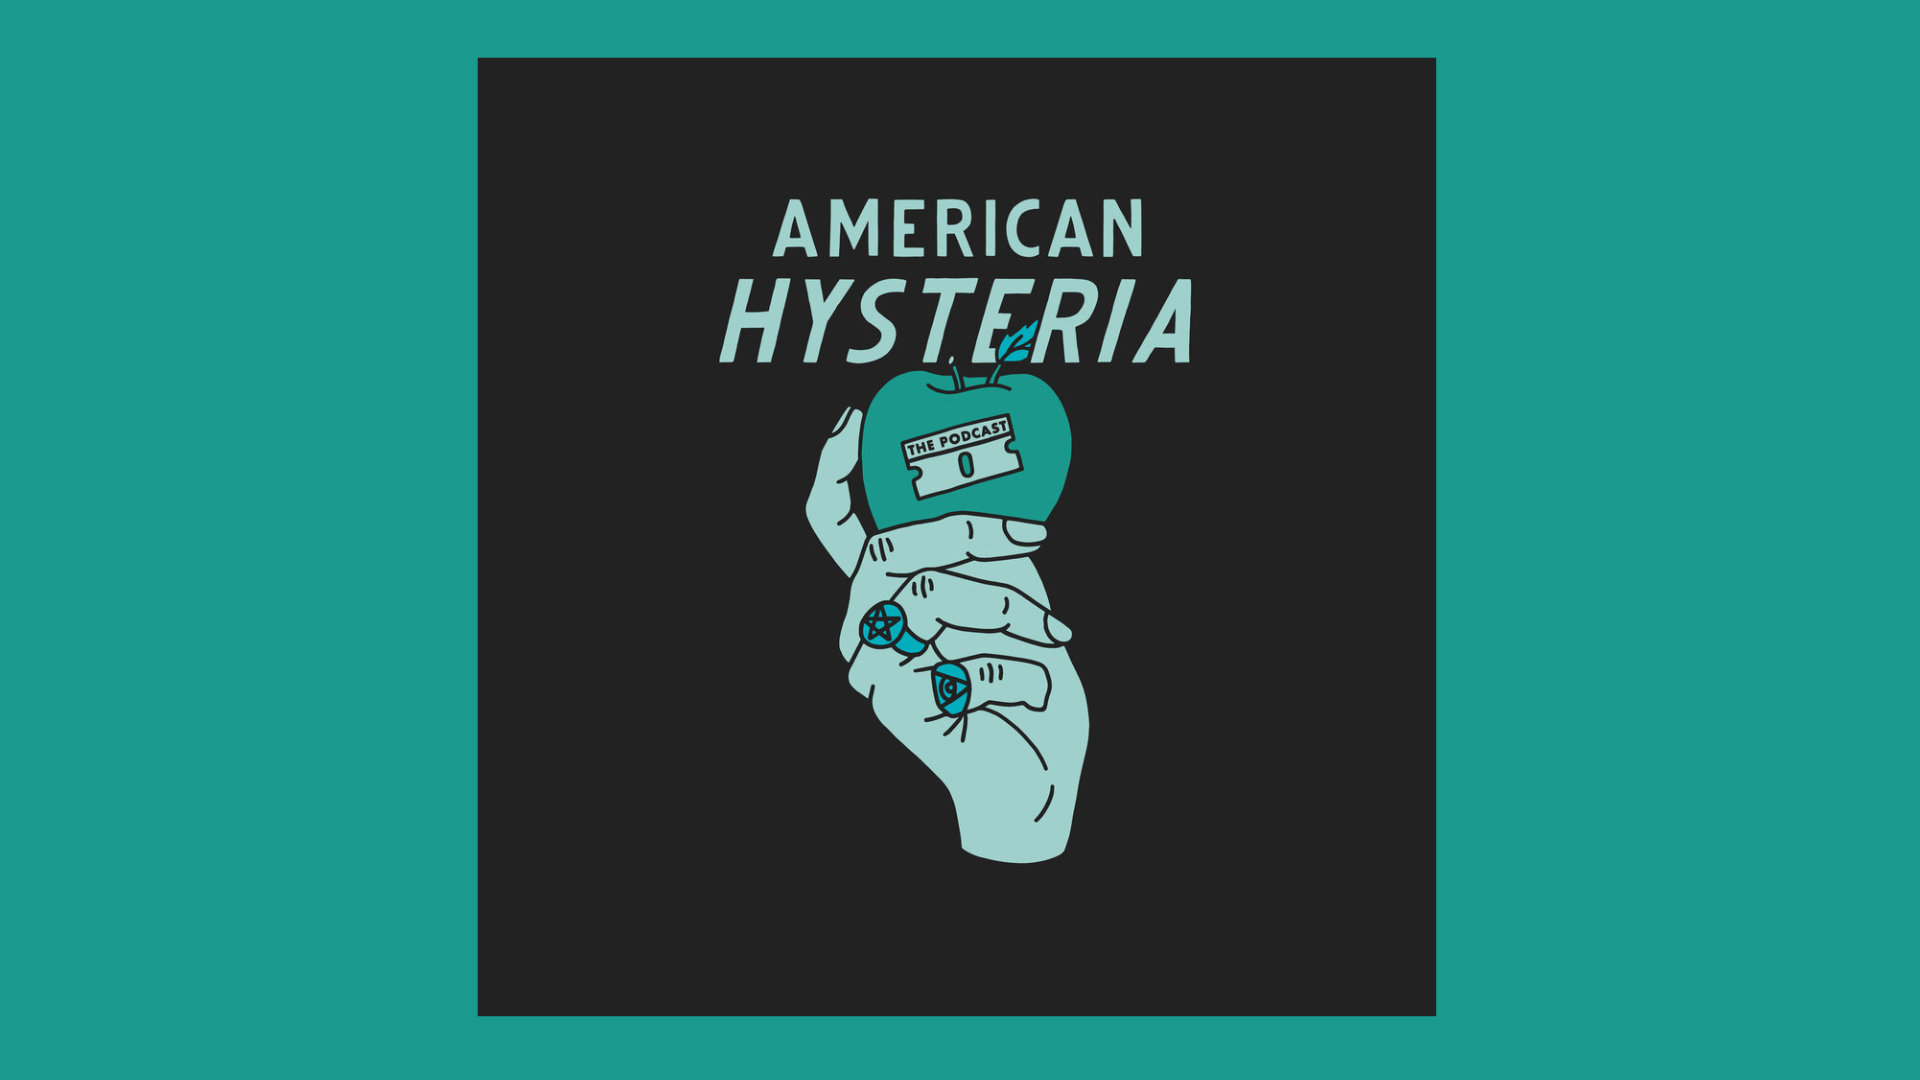 Image: Podcast logo